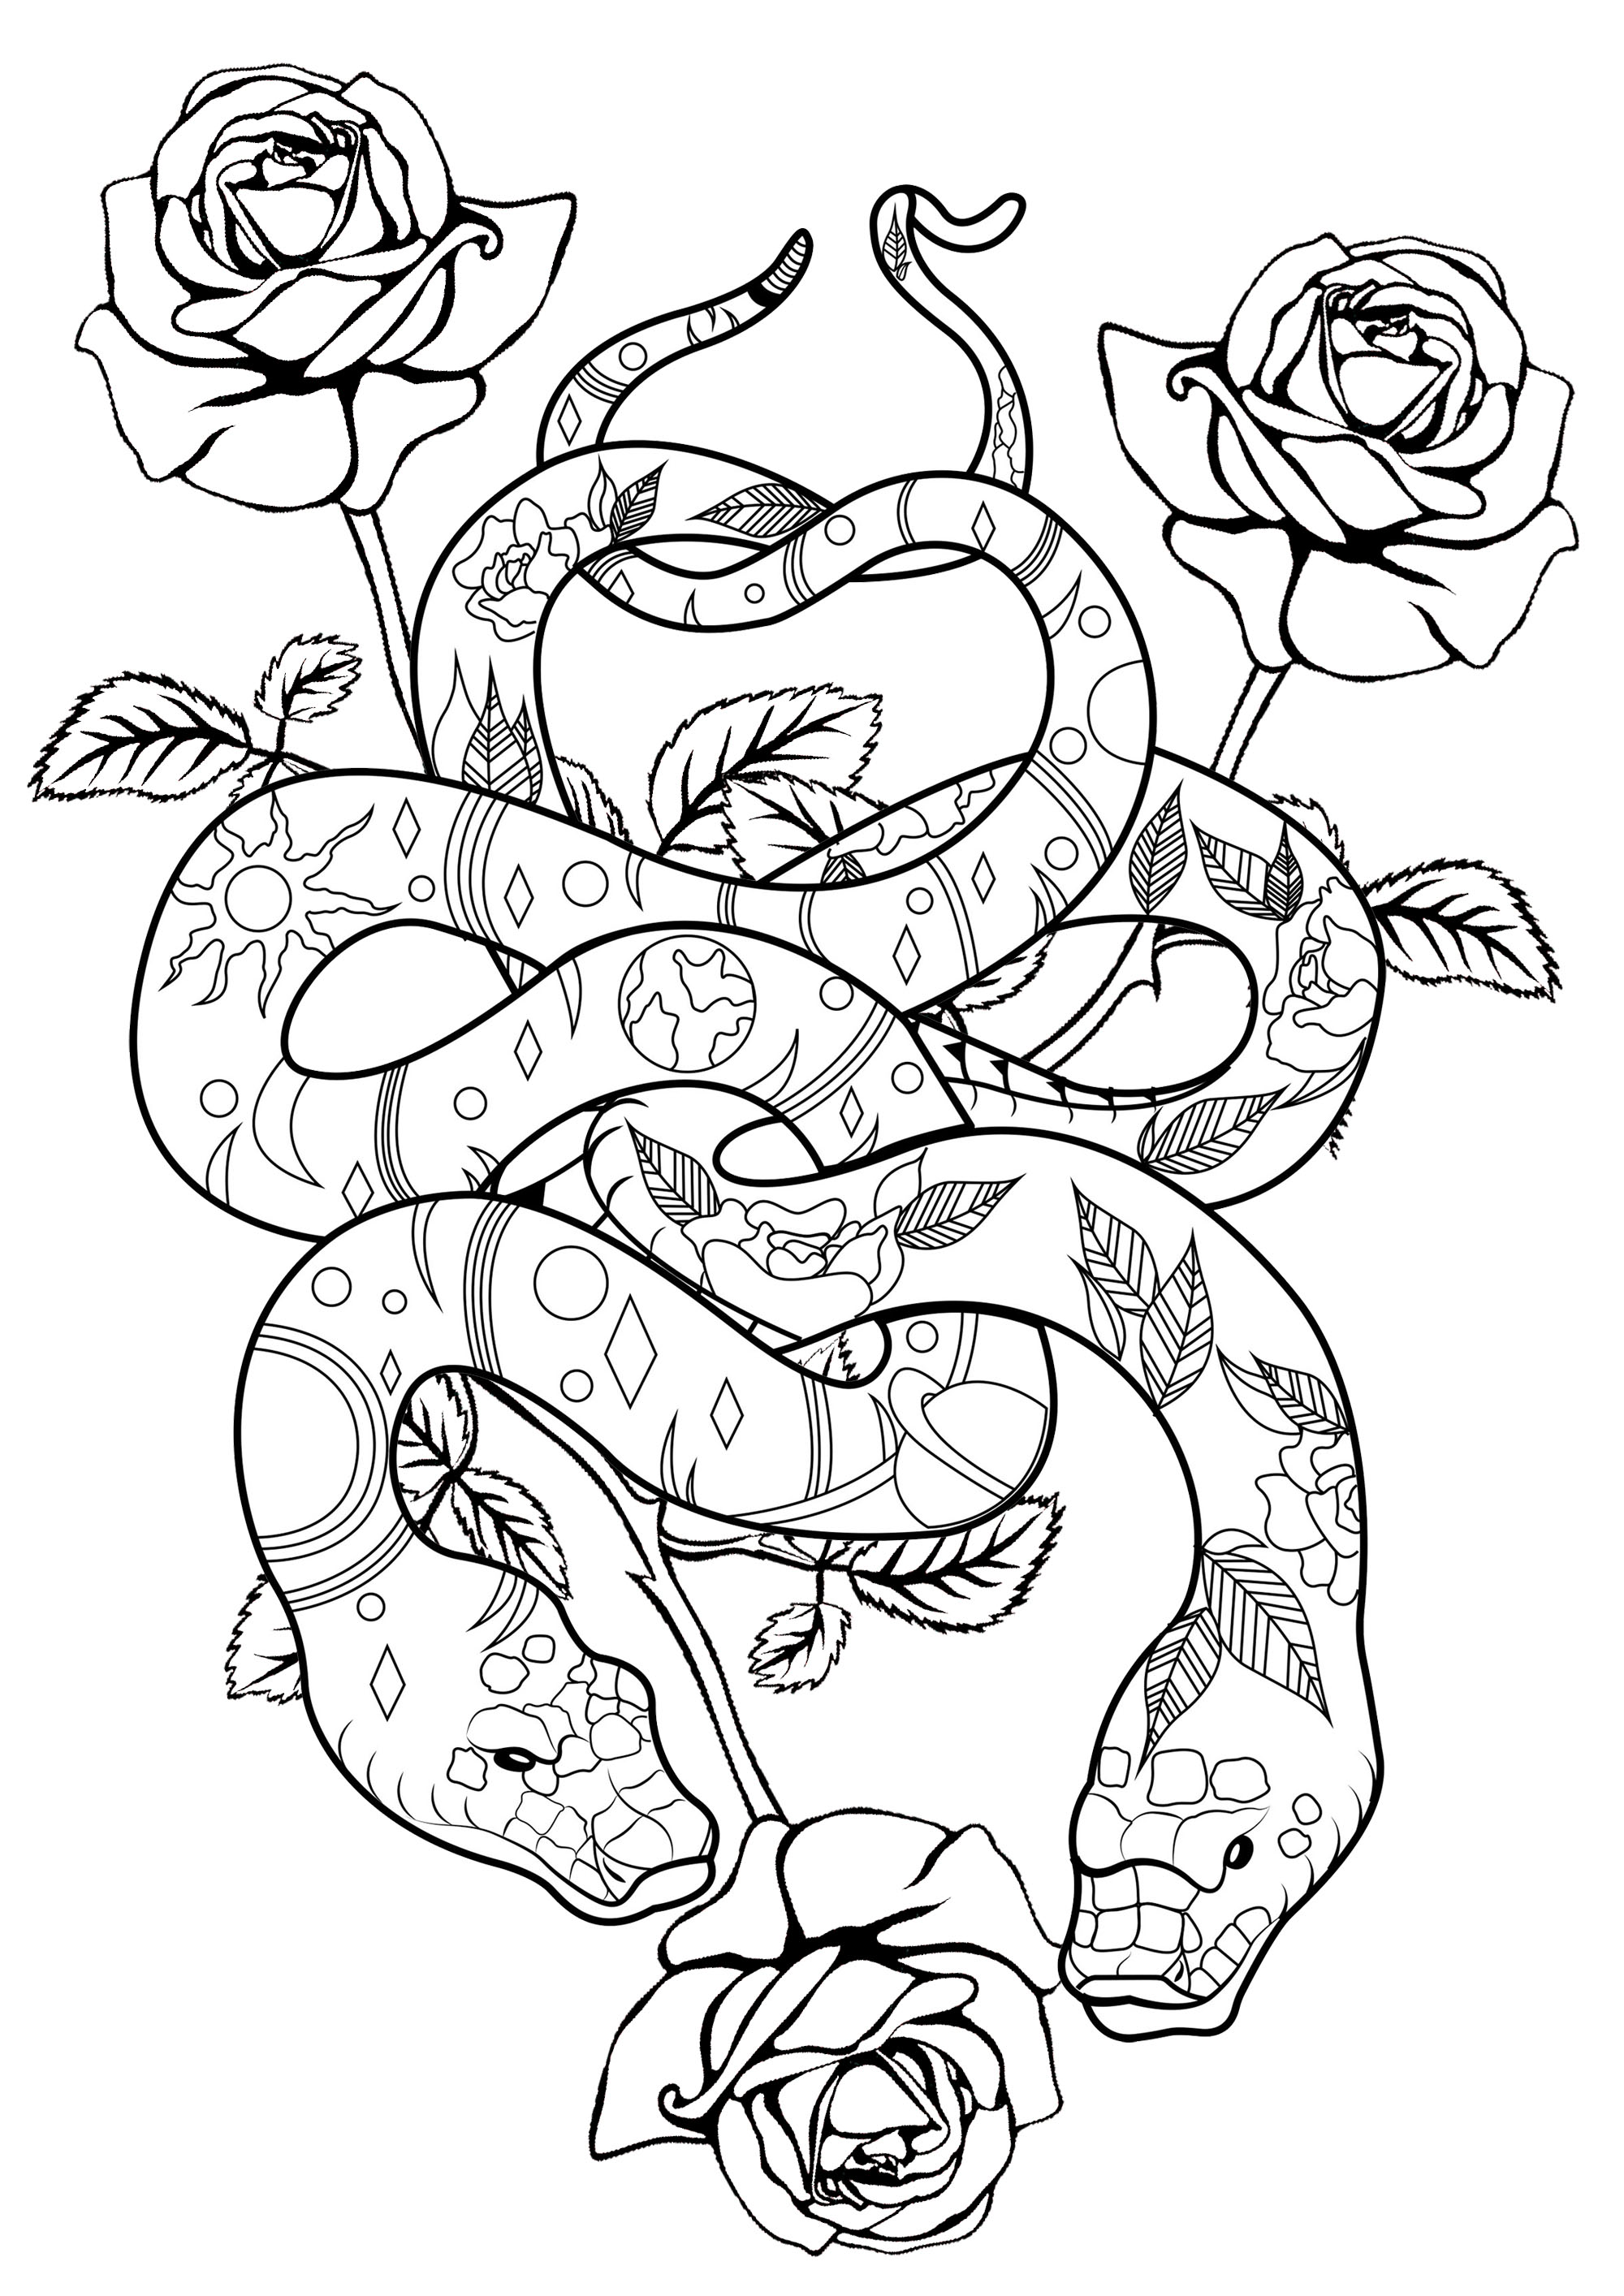 Schlangen und Rosen gemischt, für eine Mischung aus Süße und Gefahr ...